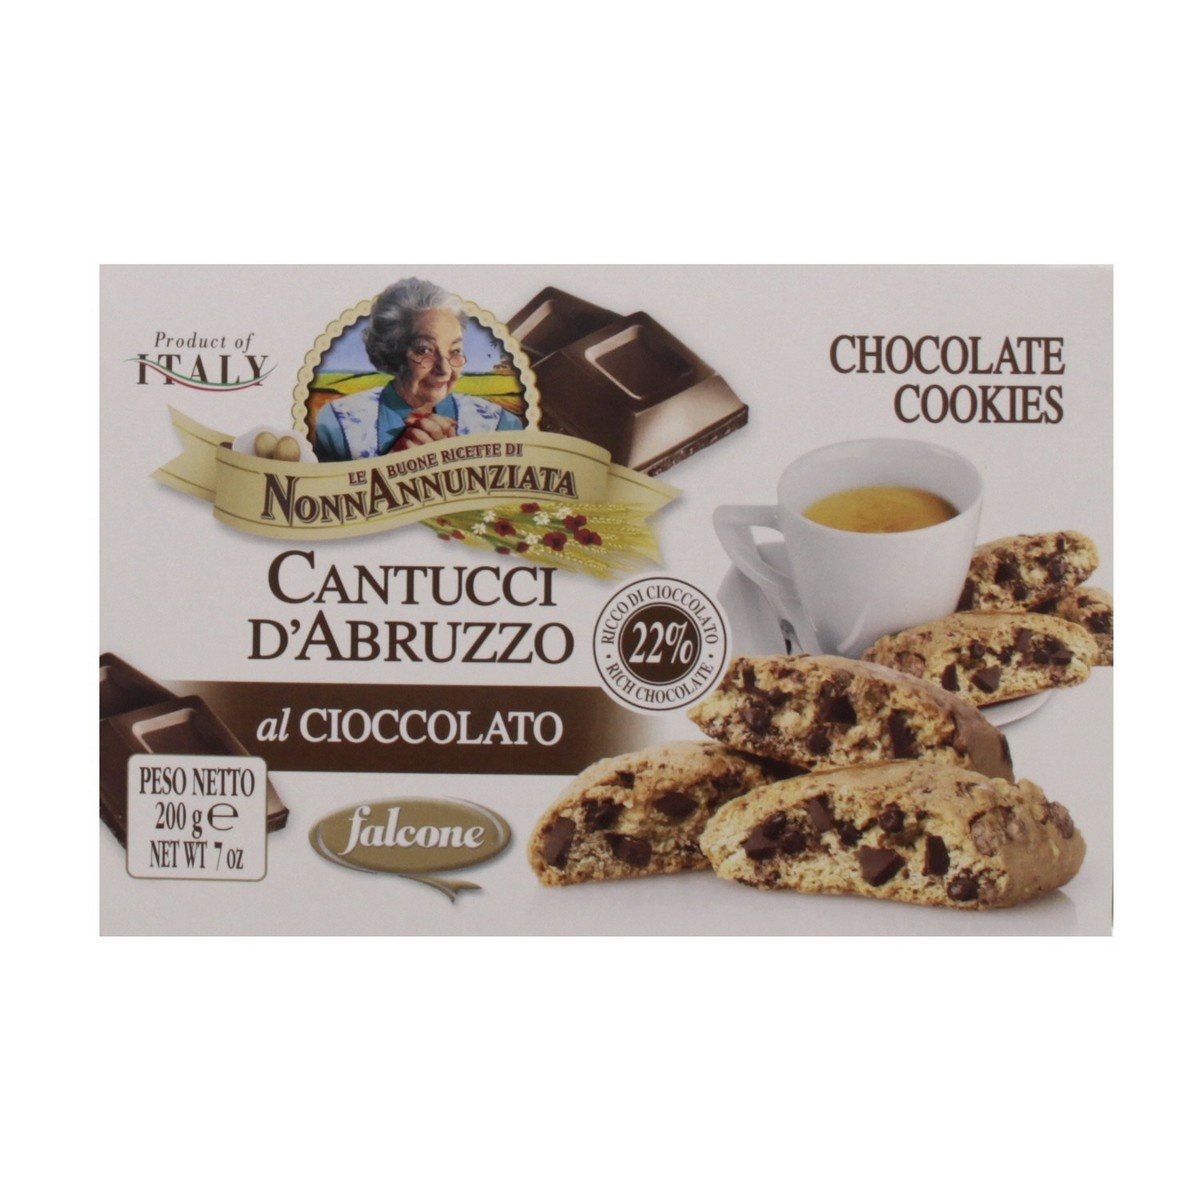 Nonn Annunziata Chocolate Cookies 100 g